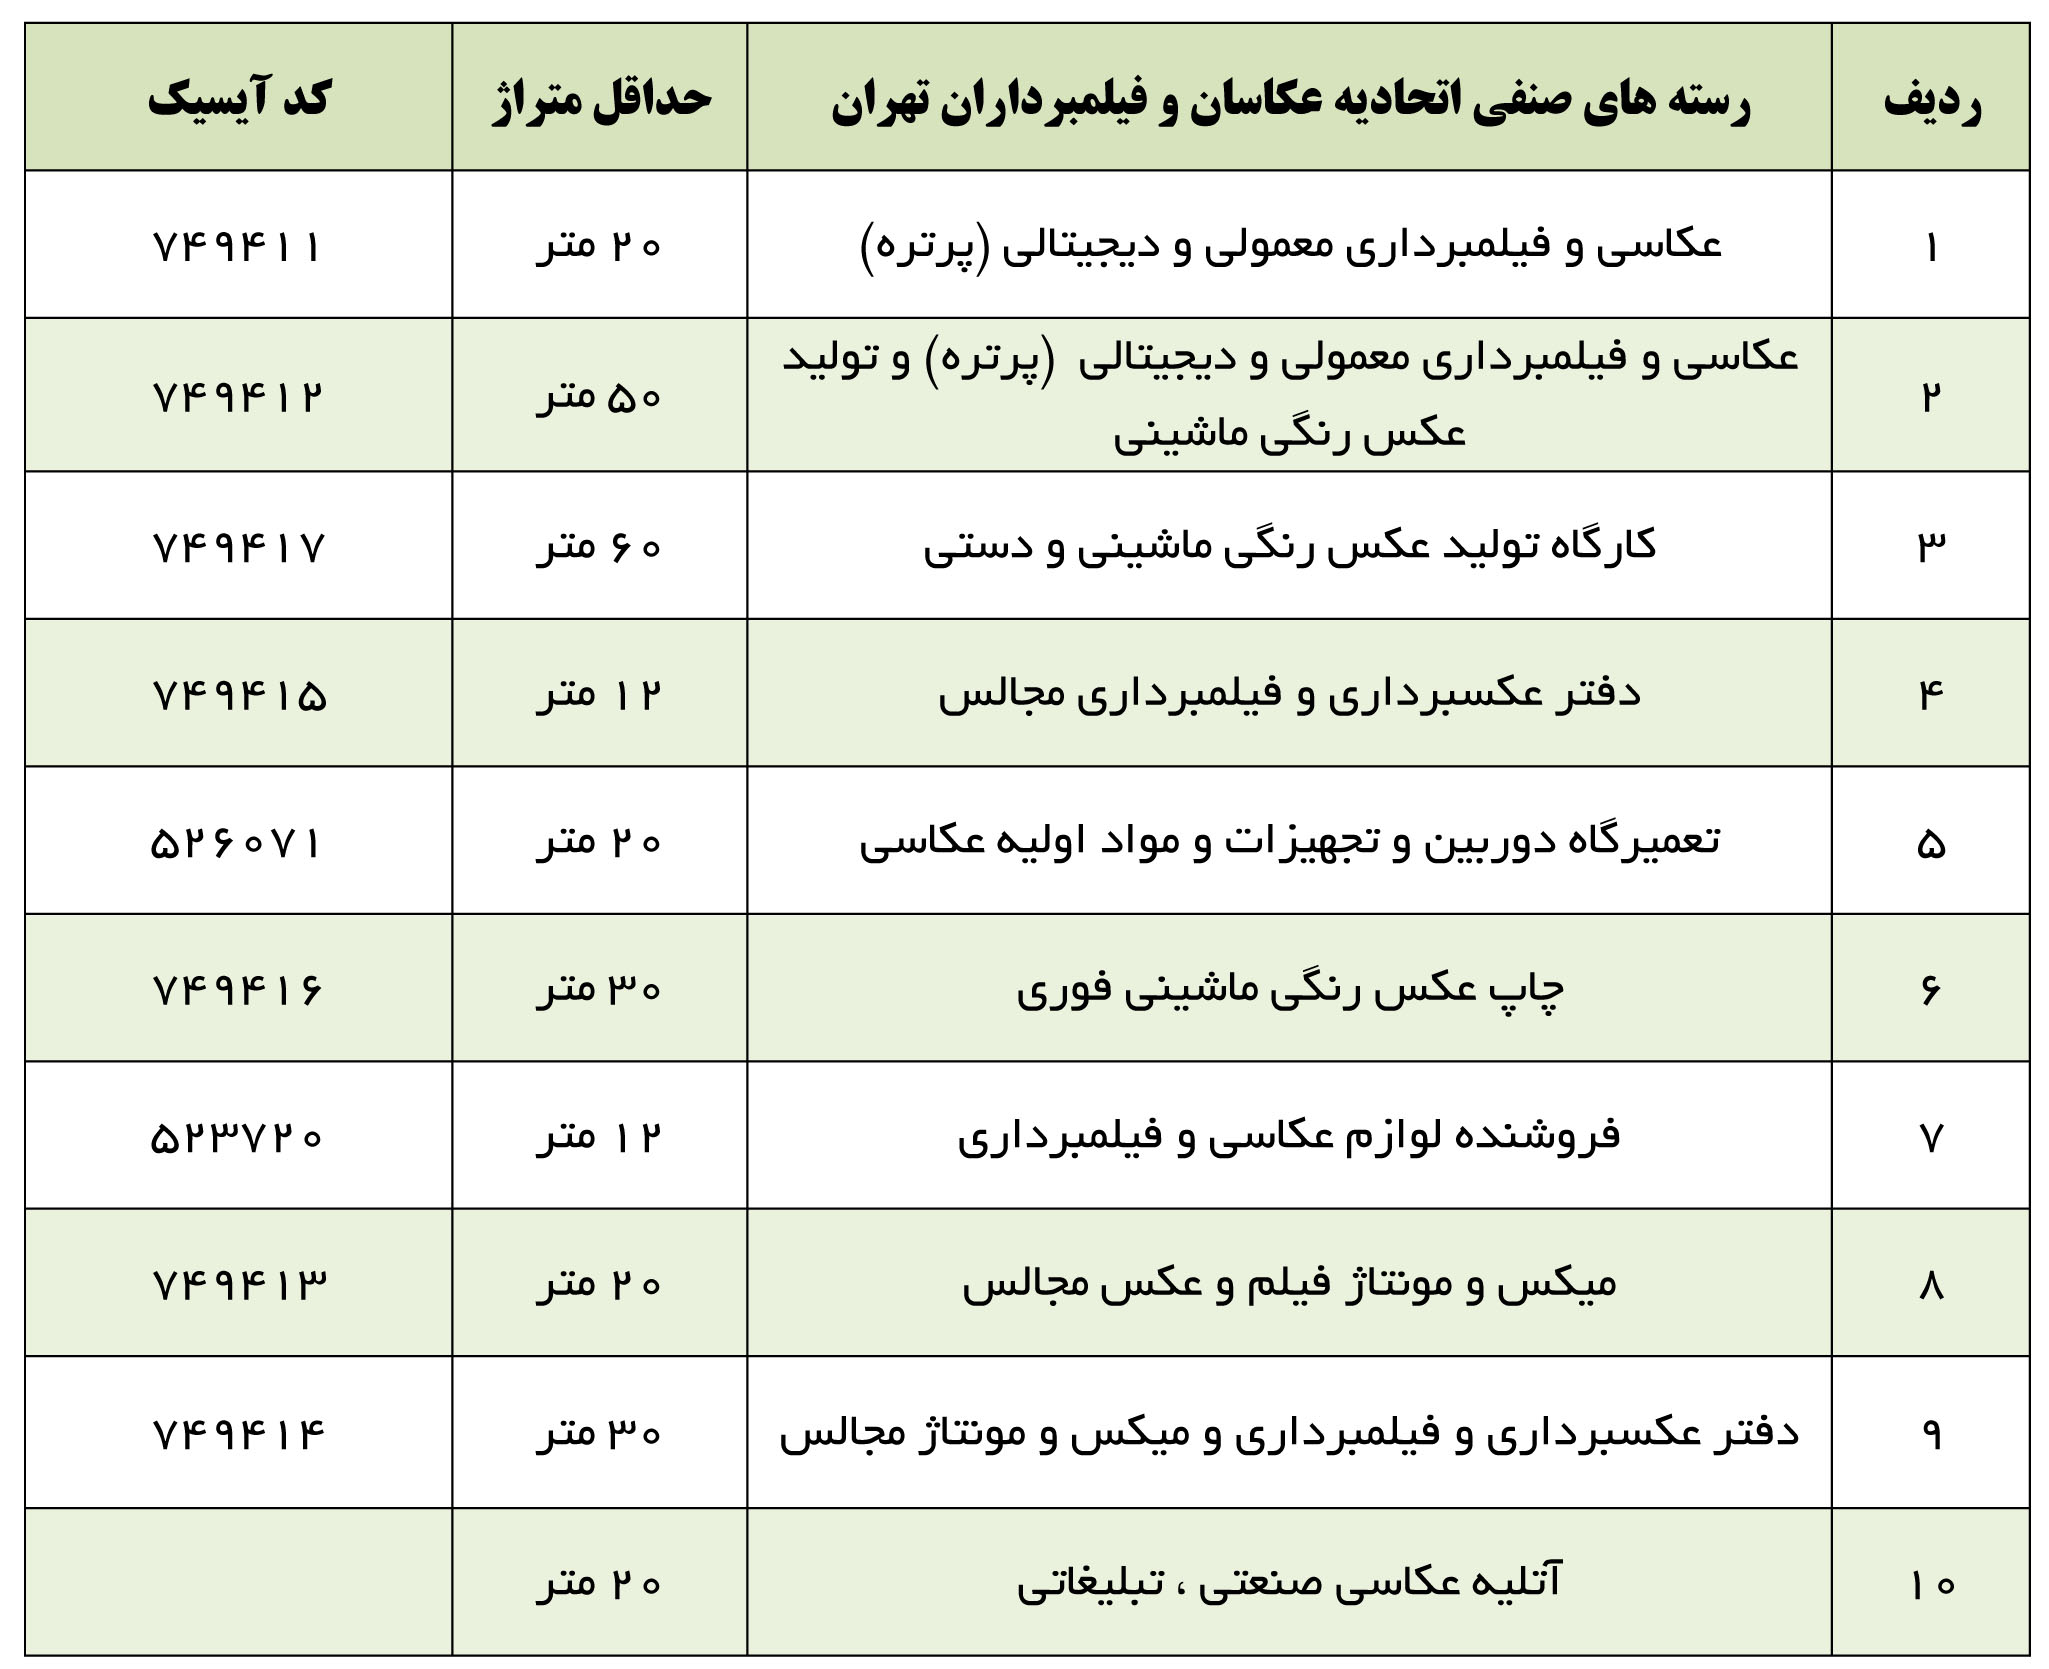 کد آیسیک و رسته های صنفی اتحادیه عکاسان و فیلمبرداران تهران